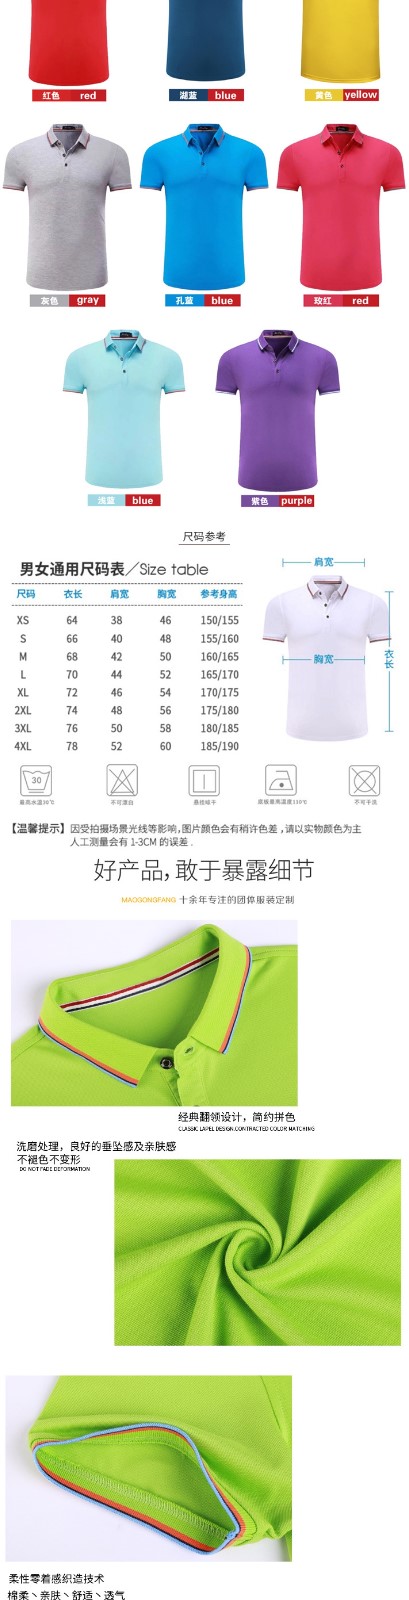 純棉工作服t恤定制印logo短袖團體裝文化廣告polo衫工衣打字刺繡(圖4)